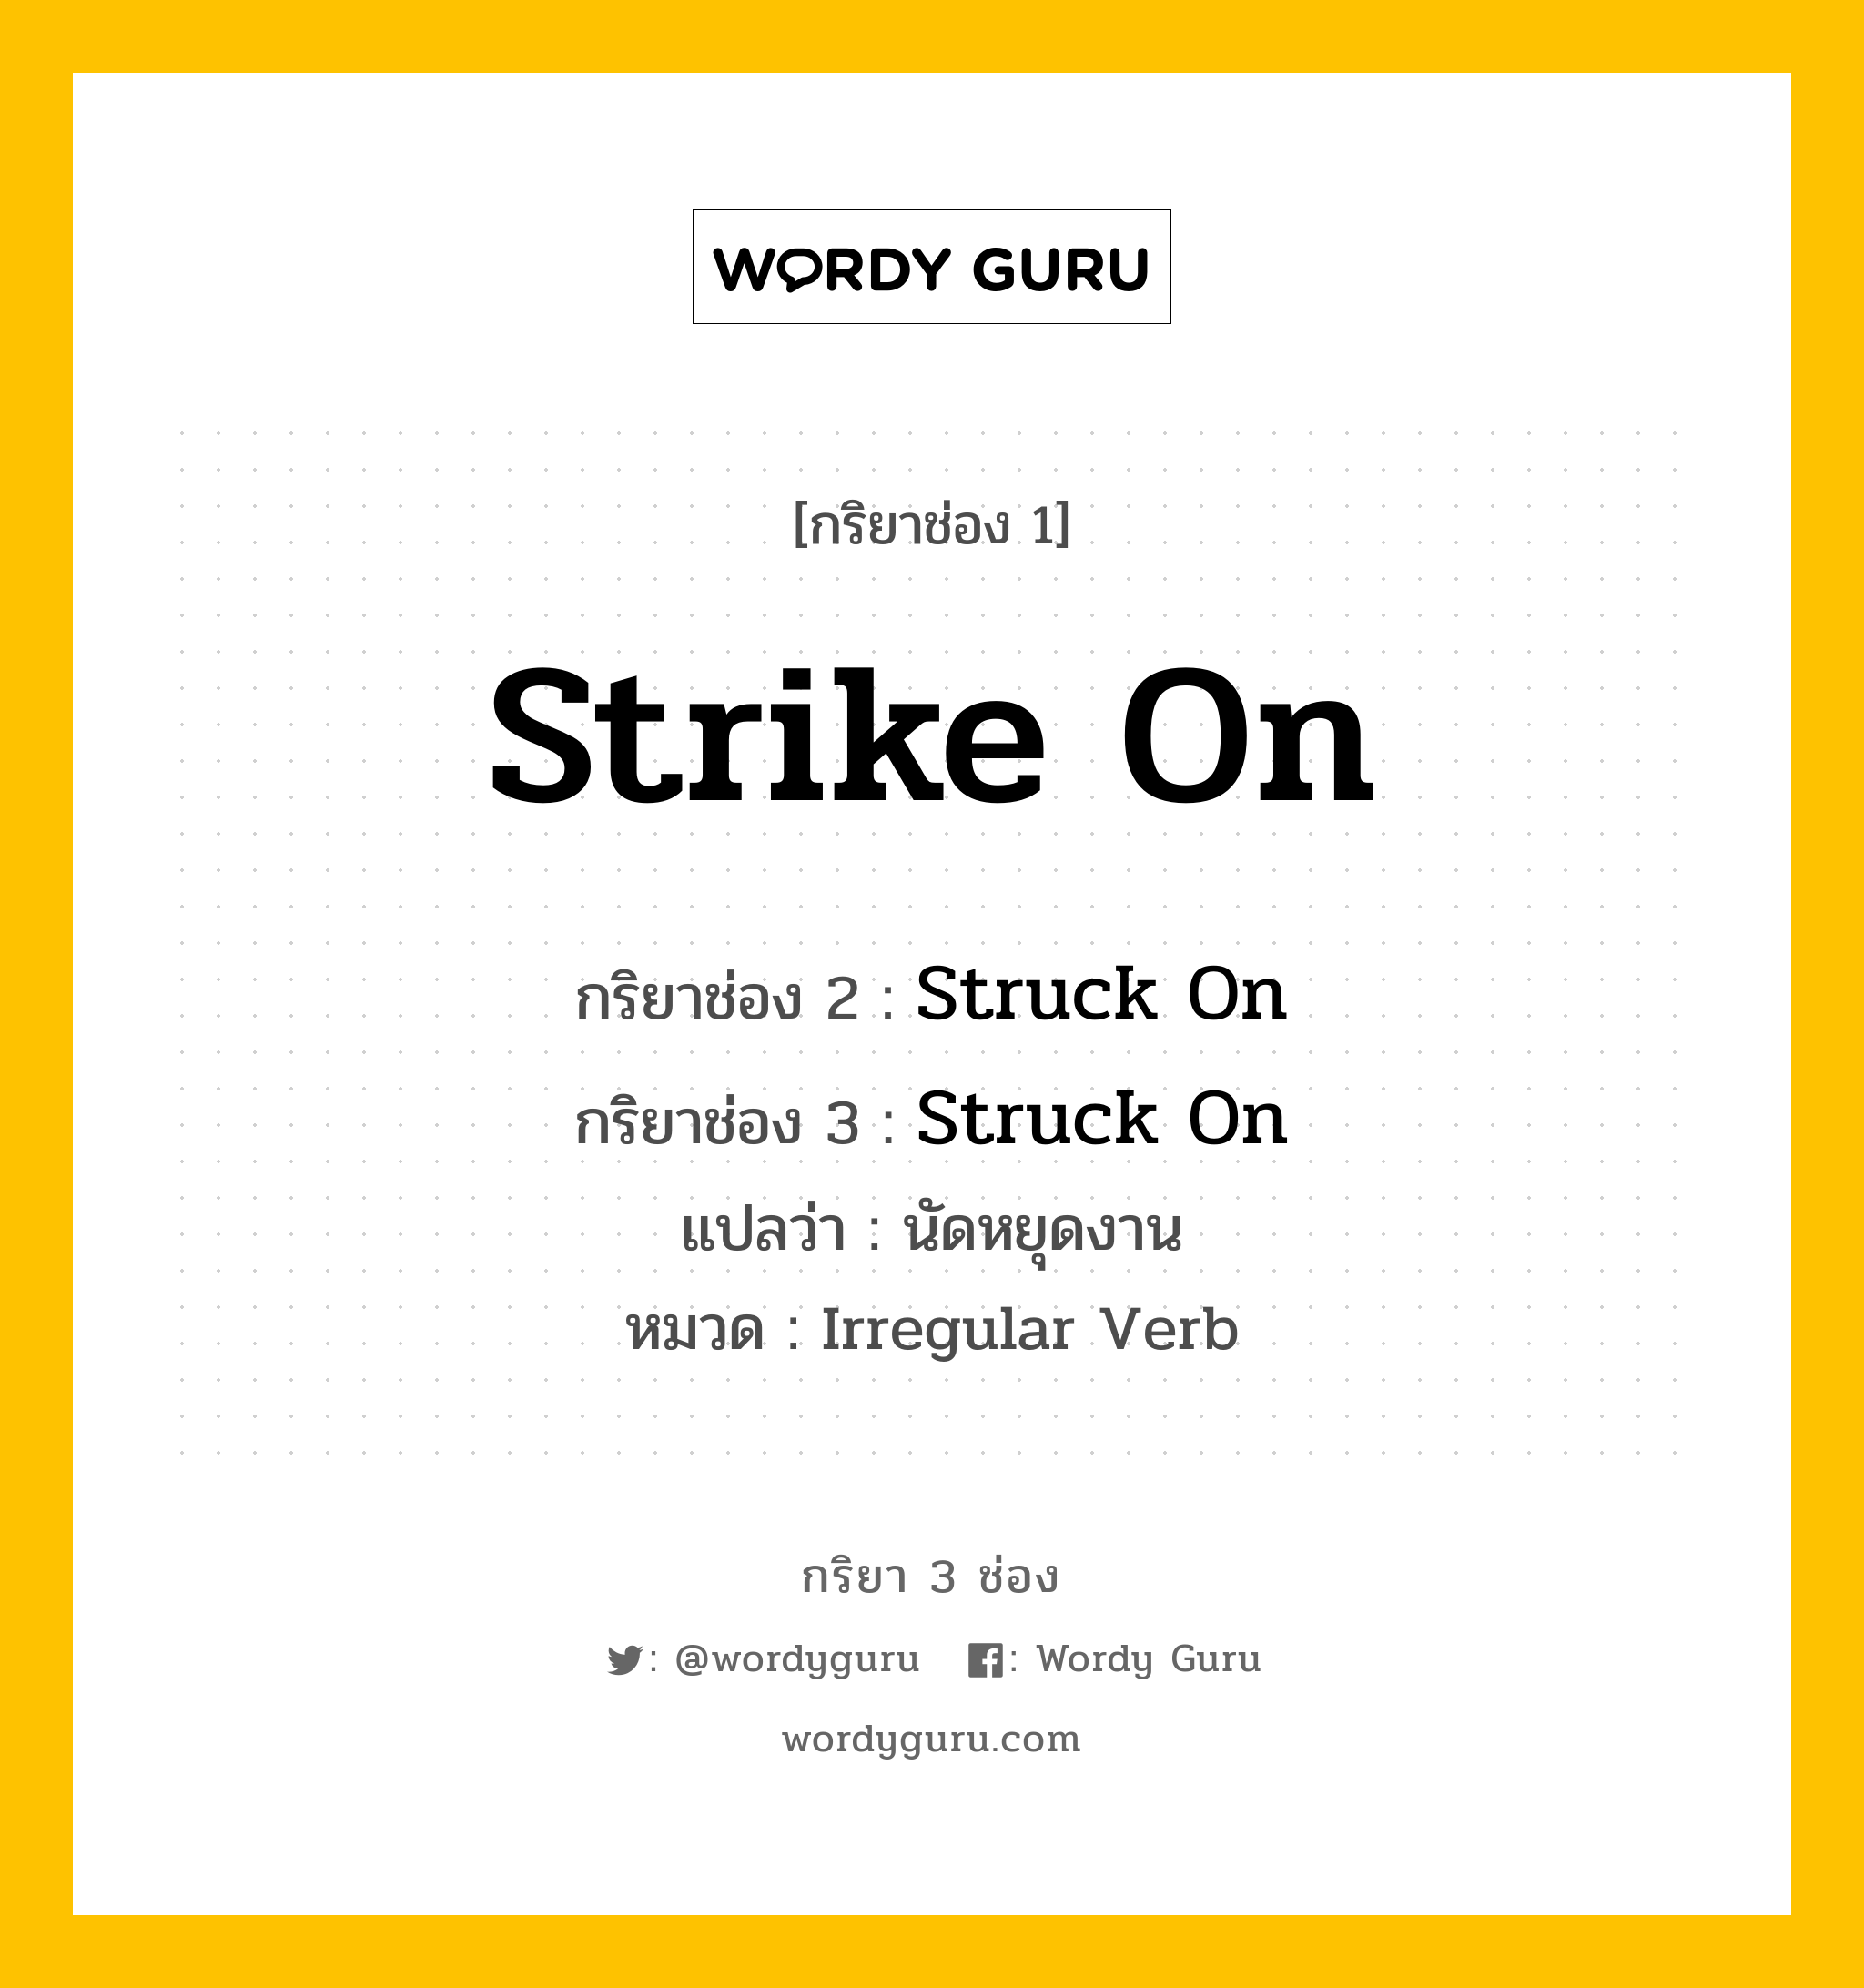 กริยา 3 ช่อง ของ Strike On คืออะไร? มาดูคำอ่าน คำแปลกันเลย, กริยาช่อง 1 Strike On กริยาช่อง 2 Struck On กริยาช่อง 3 Struck On แปลว่า นัดหยุดงาน หมวด Irregular Verb หมวด Irregular Verb